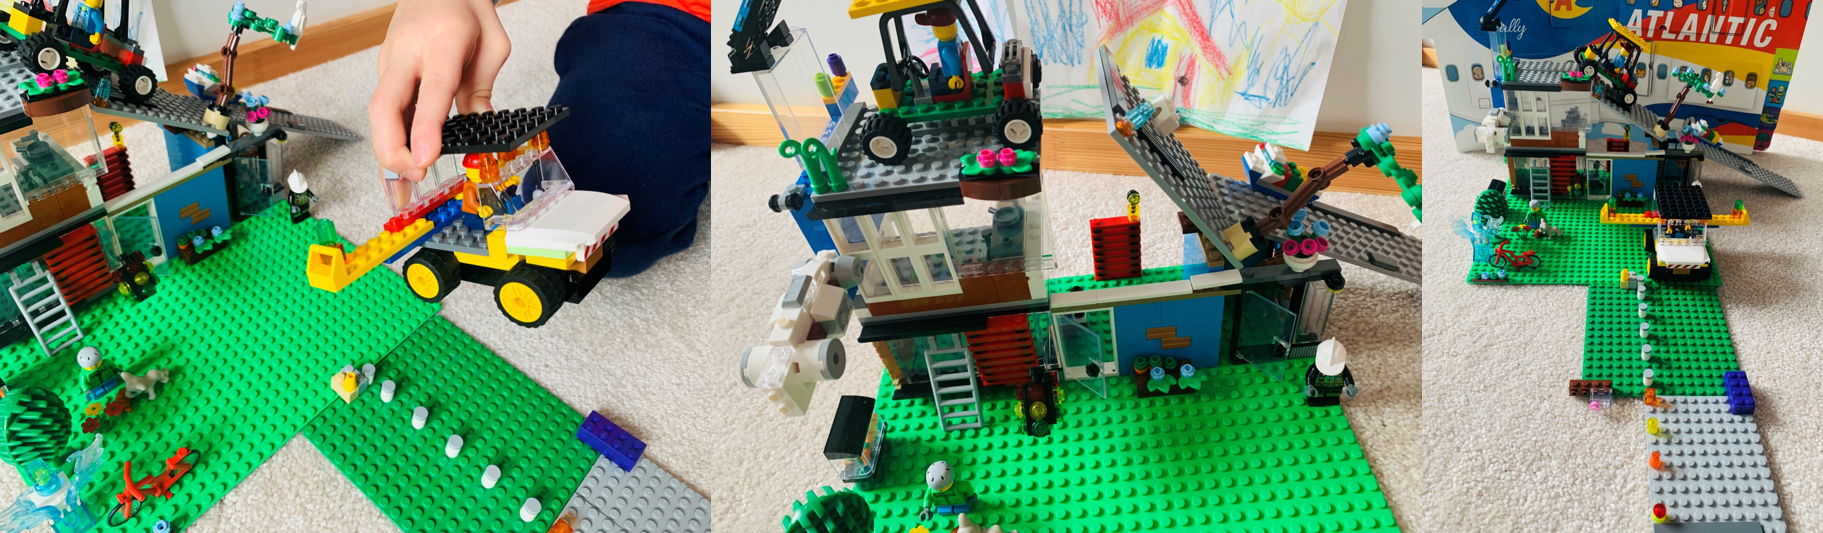 L’œuvre en LEGO® d’un enfant, intitulée « Future Flying Garage Home! » (Maison de l’avenir avec garage pour voiture volante!), est posée à même le sol.